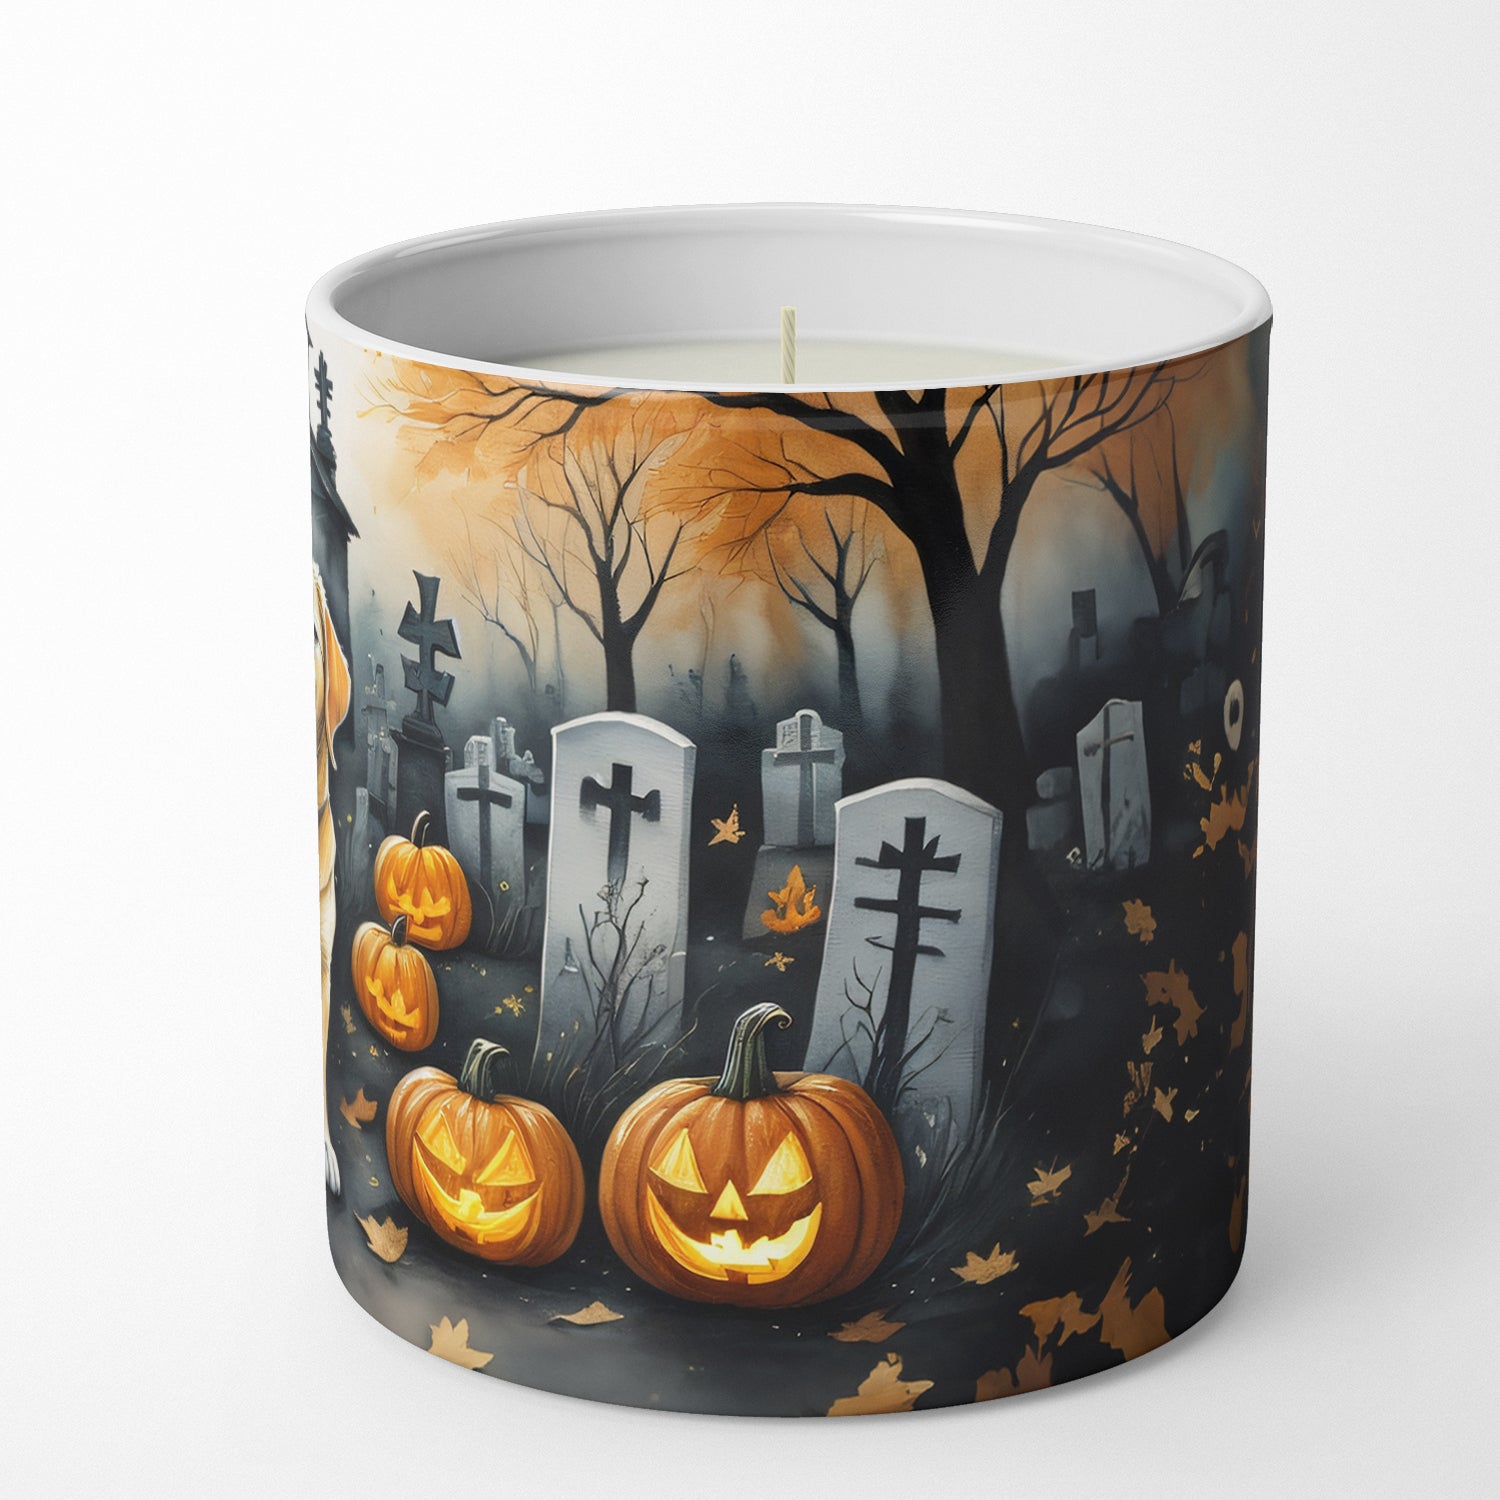 Yellow Labrador Retriever Spooky Halloween Decorative Soy Candle